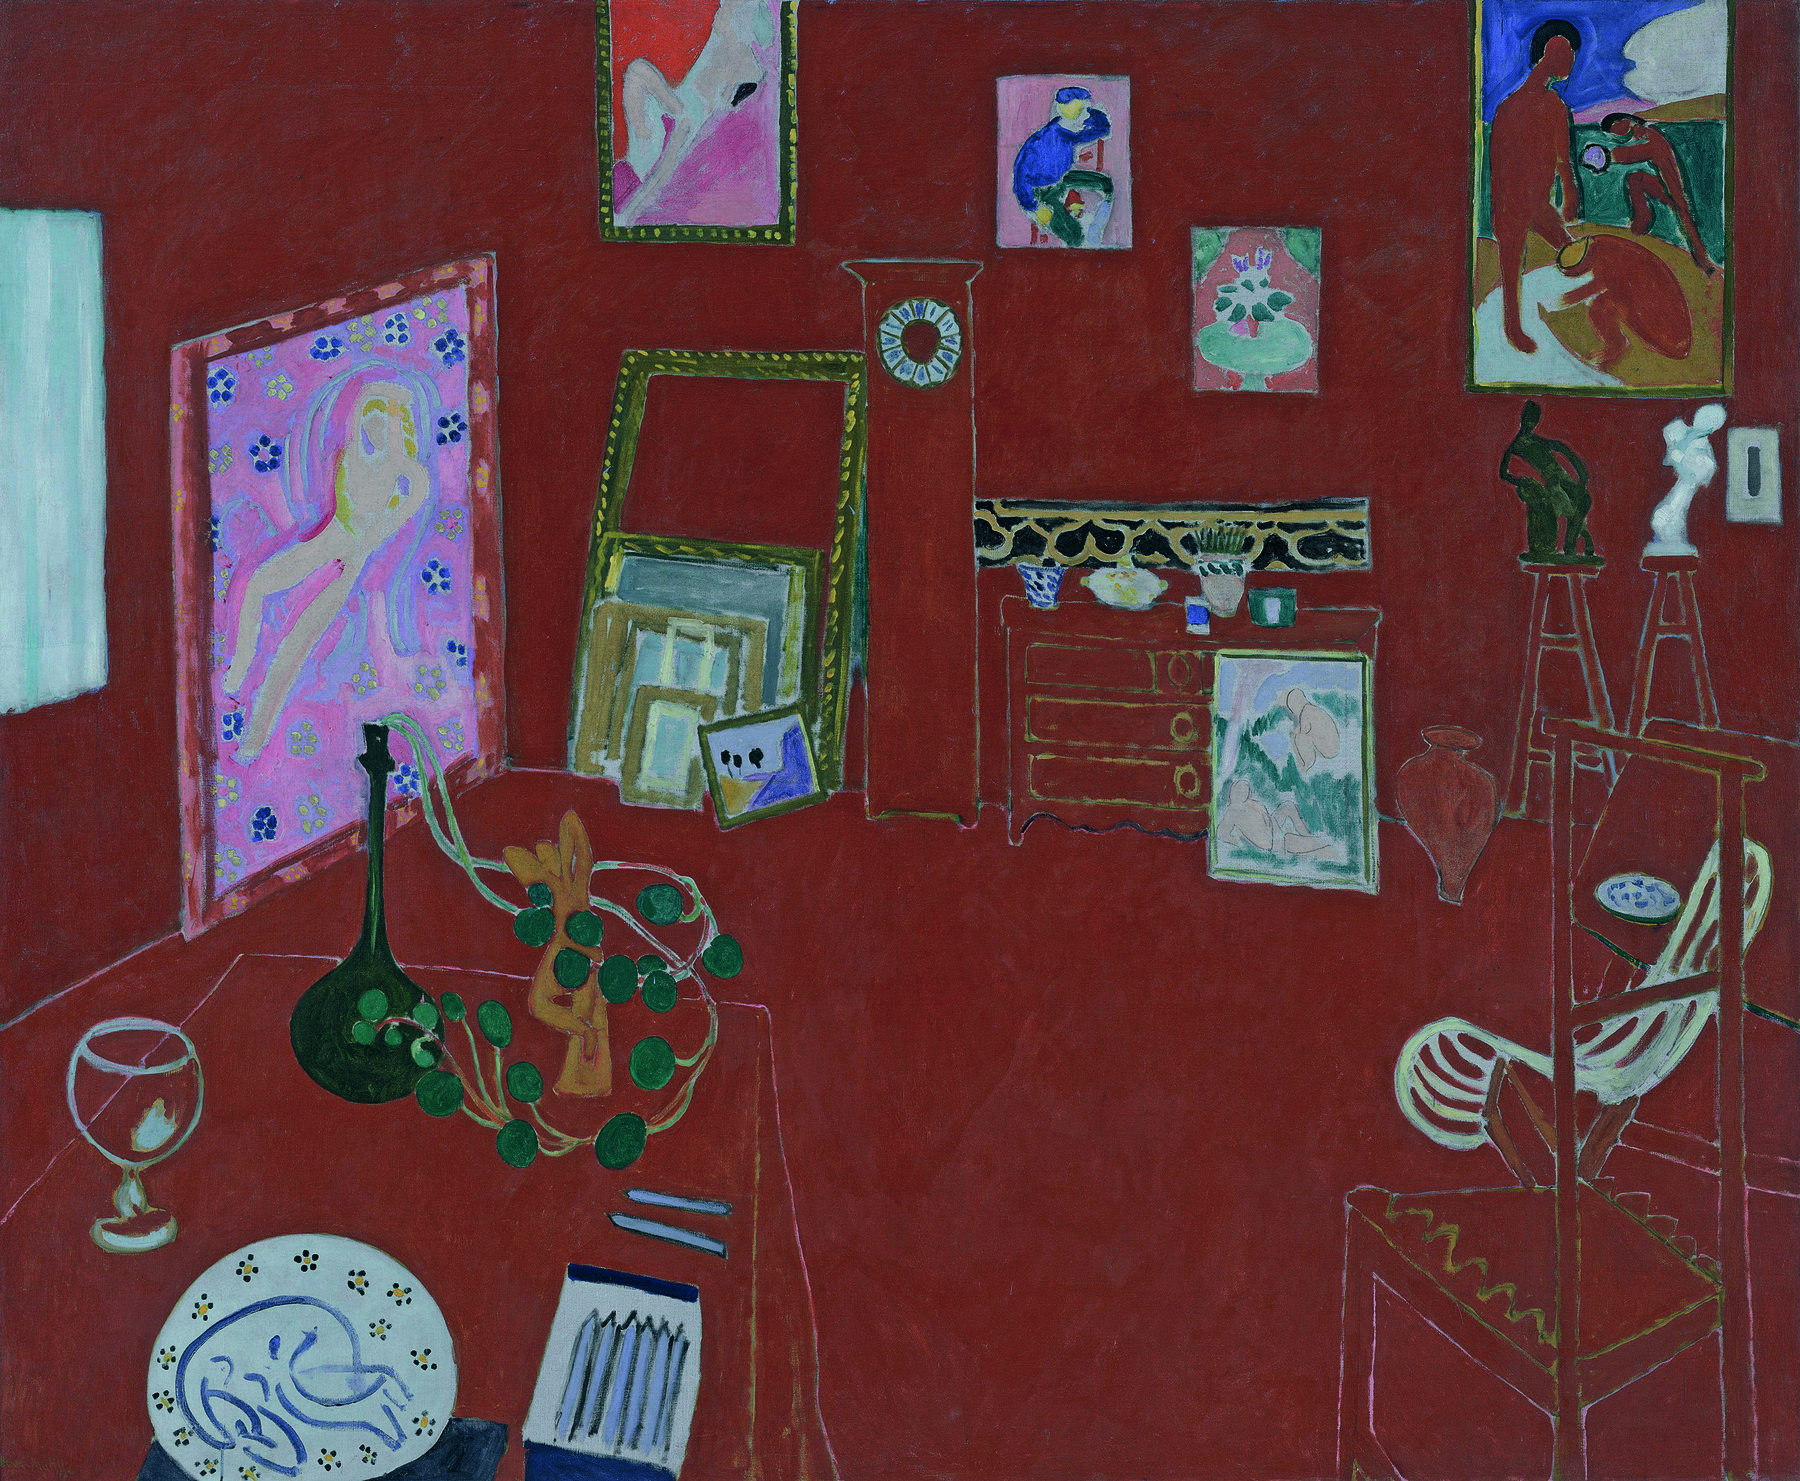 Pintura. Representação de uma sala pintada de vermelho com diversos quadros na parede e no chão, além de objetos variados, como um vaso de flores, um copo, duas esculturas, entre outros.